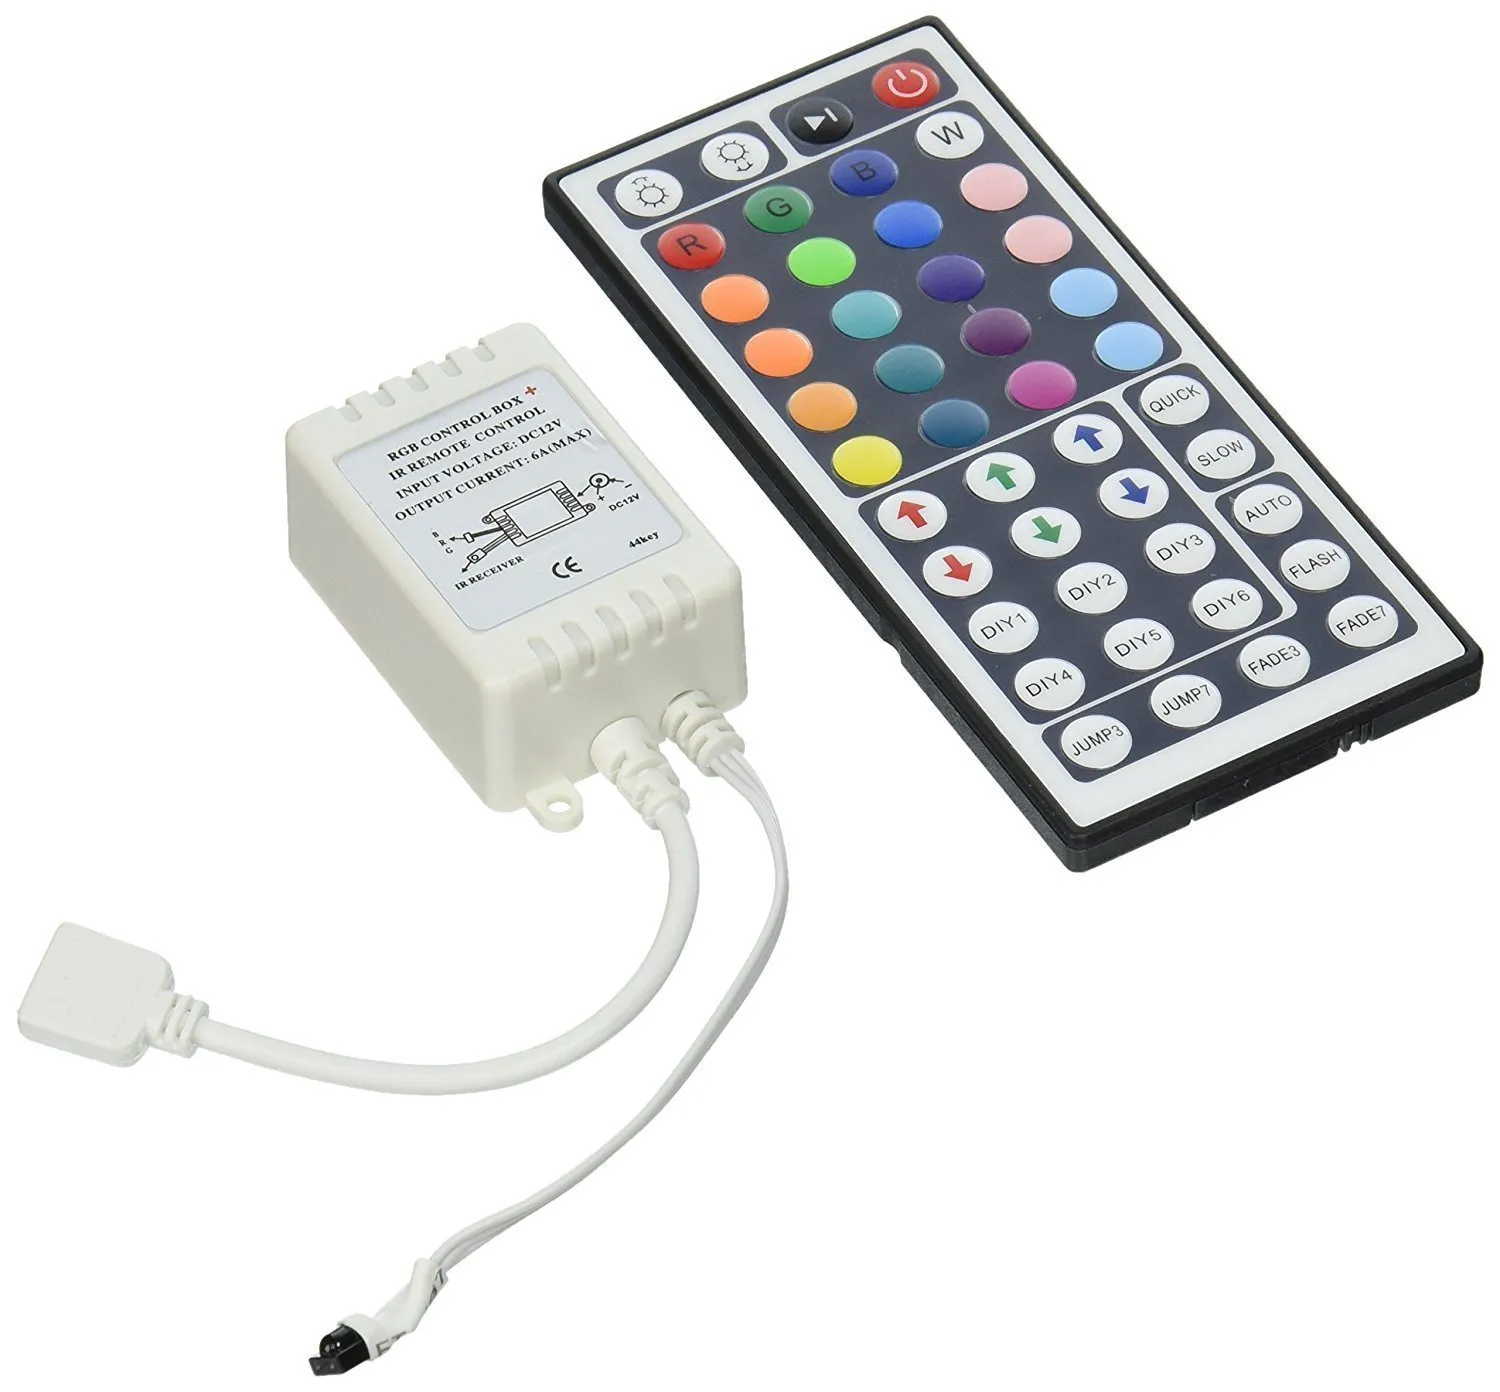 44 Tasten IR-Fernbedienung für SMD 5050 3258 RGB-LED-Streifen 7 LED-Modul Lichtkastenantrieb DC 12V LED-Lichtstreifen